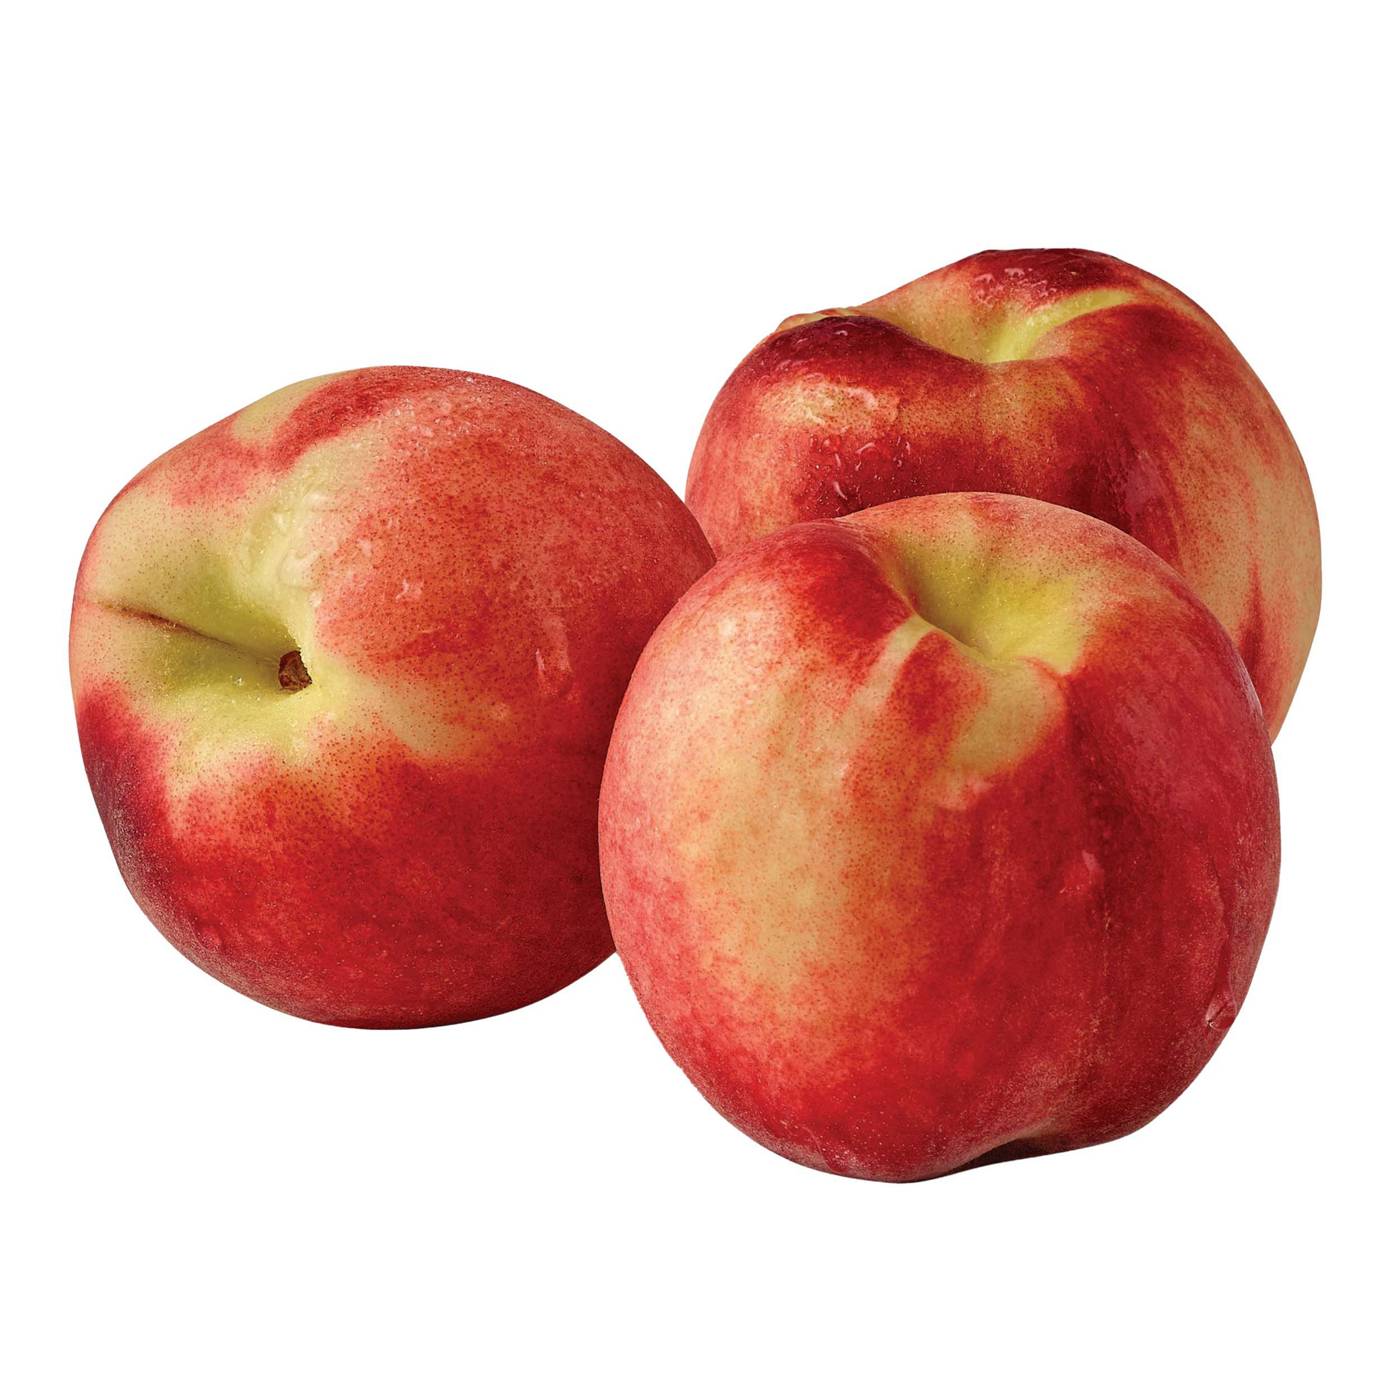 H-E-B Fresh Premium White Peach; image 1 of 2